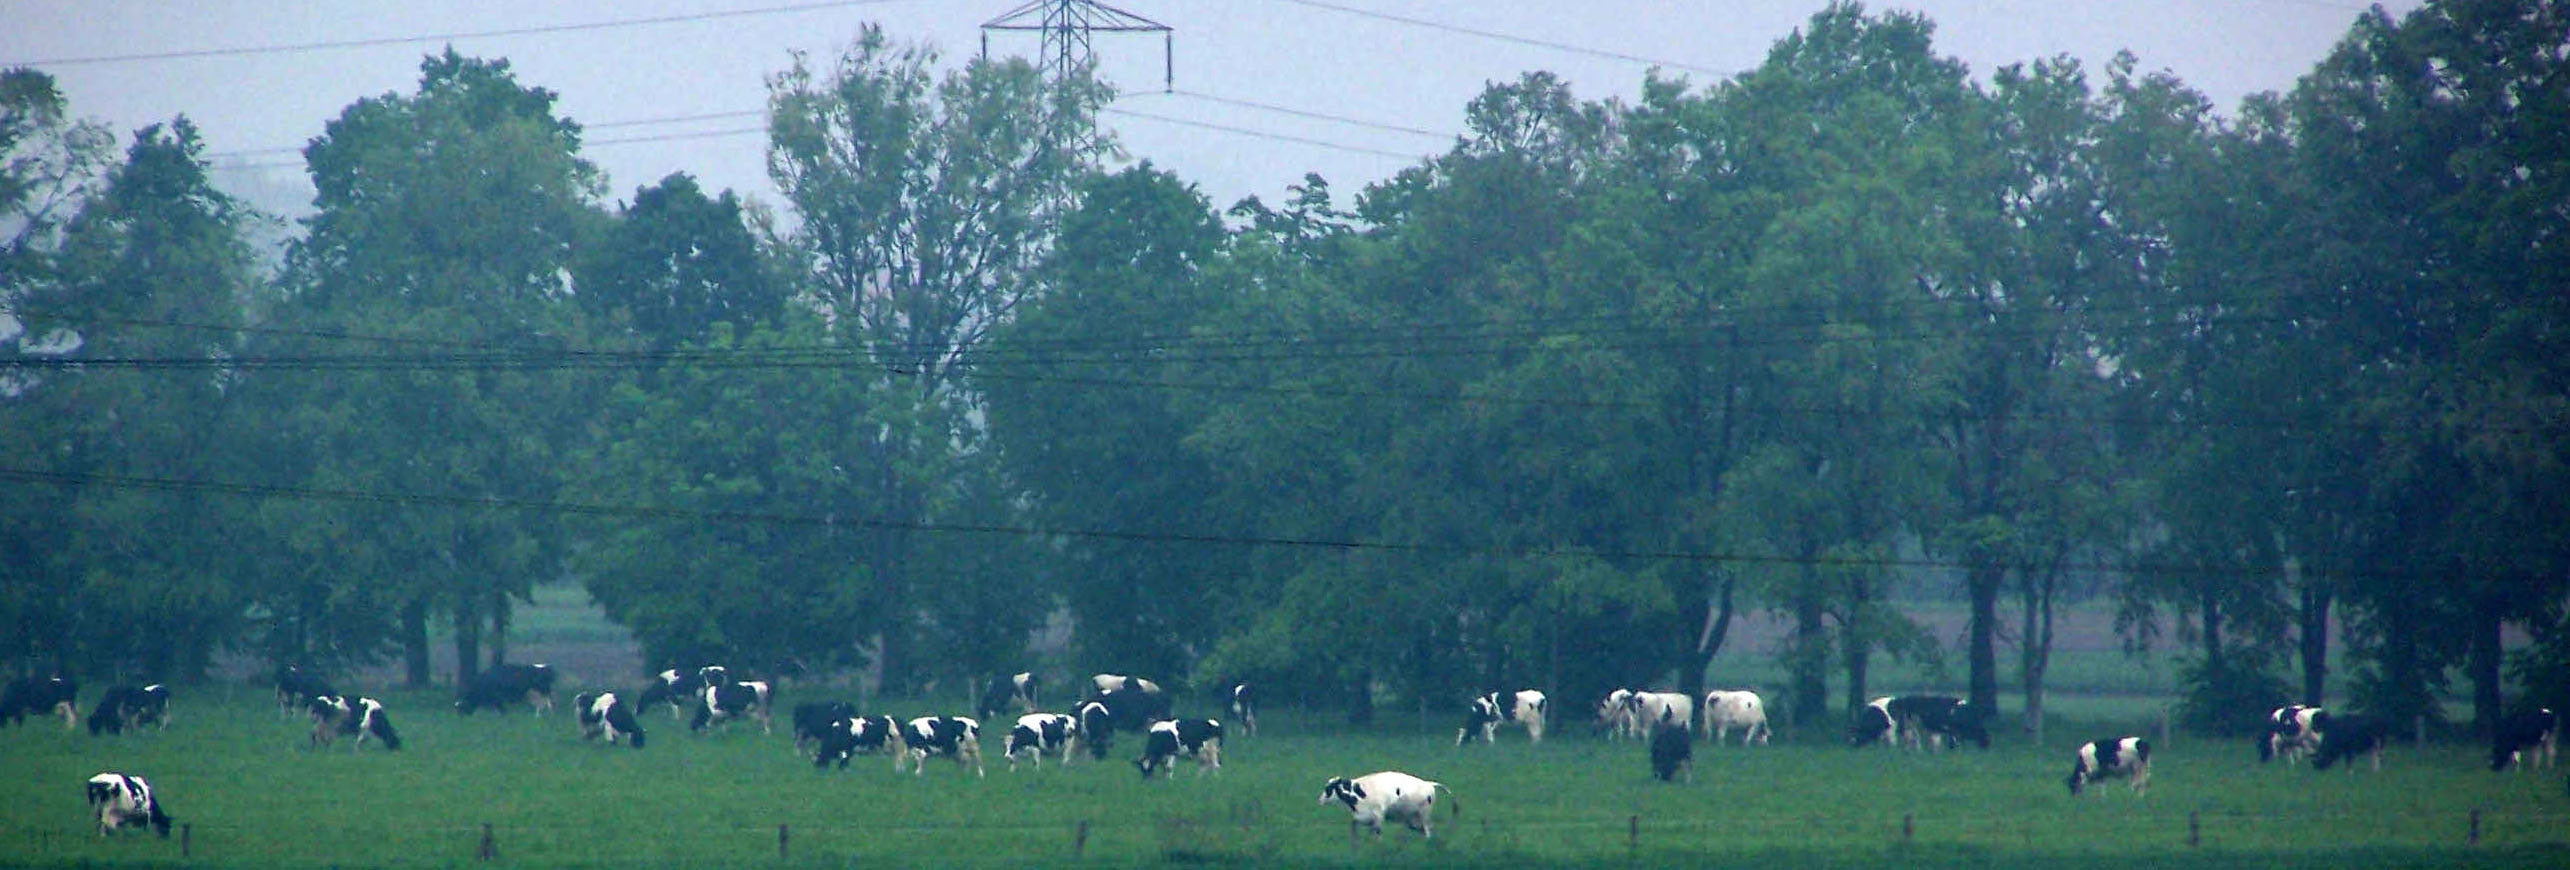 stado krów mlecznych na pastwisku (337070) bytes.jpg